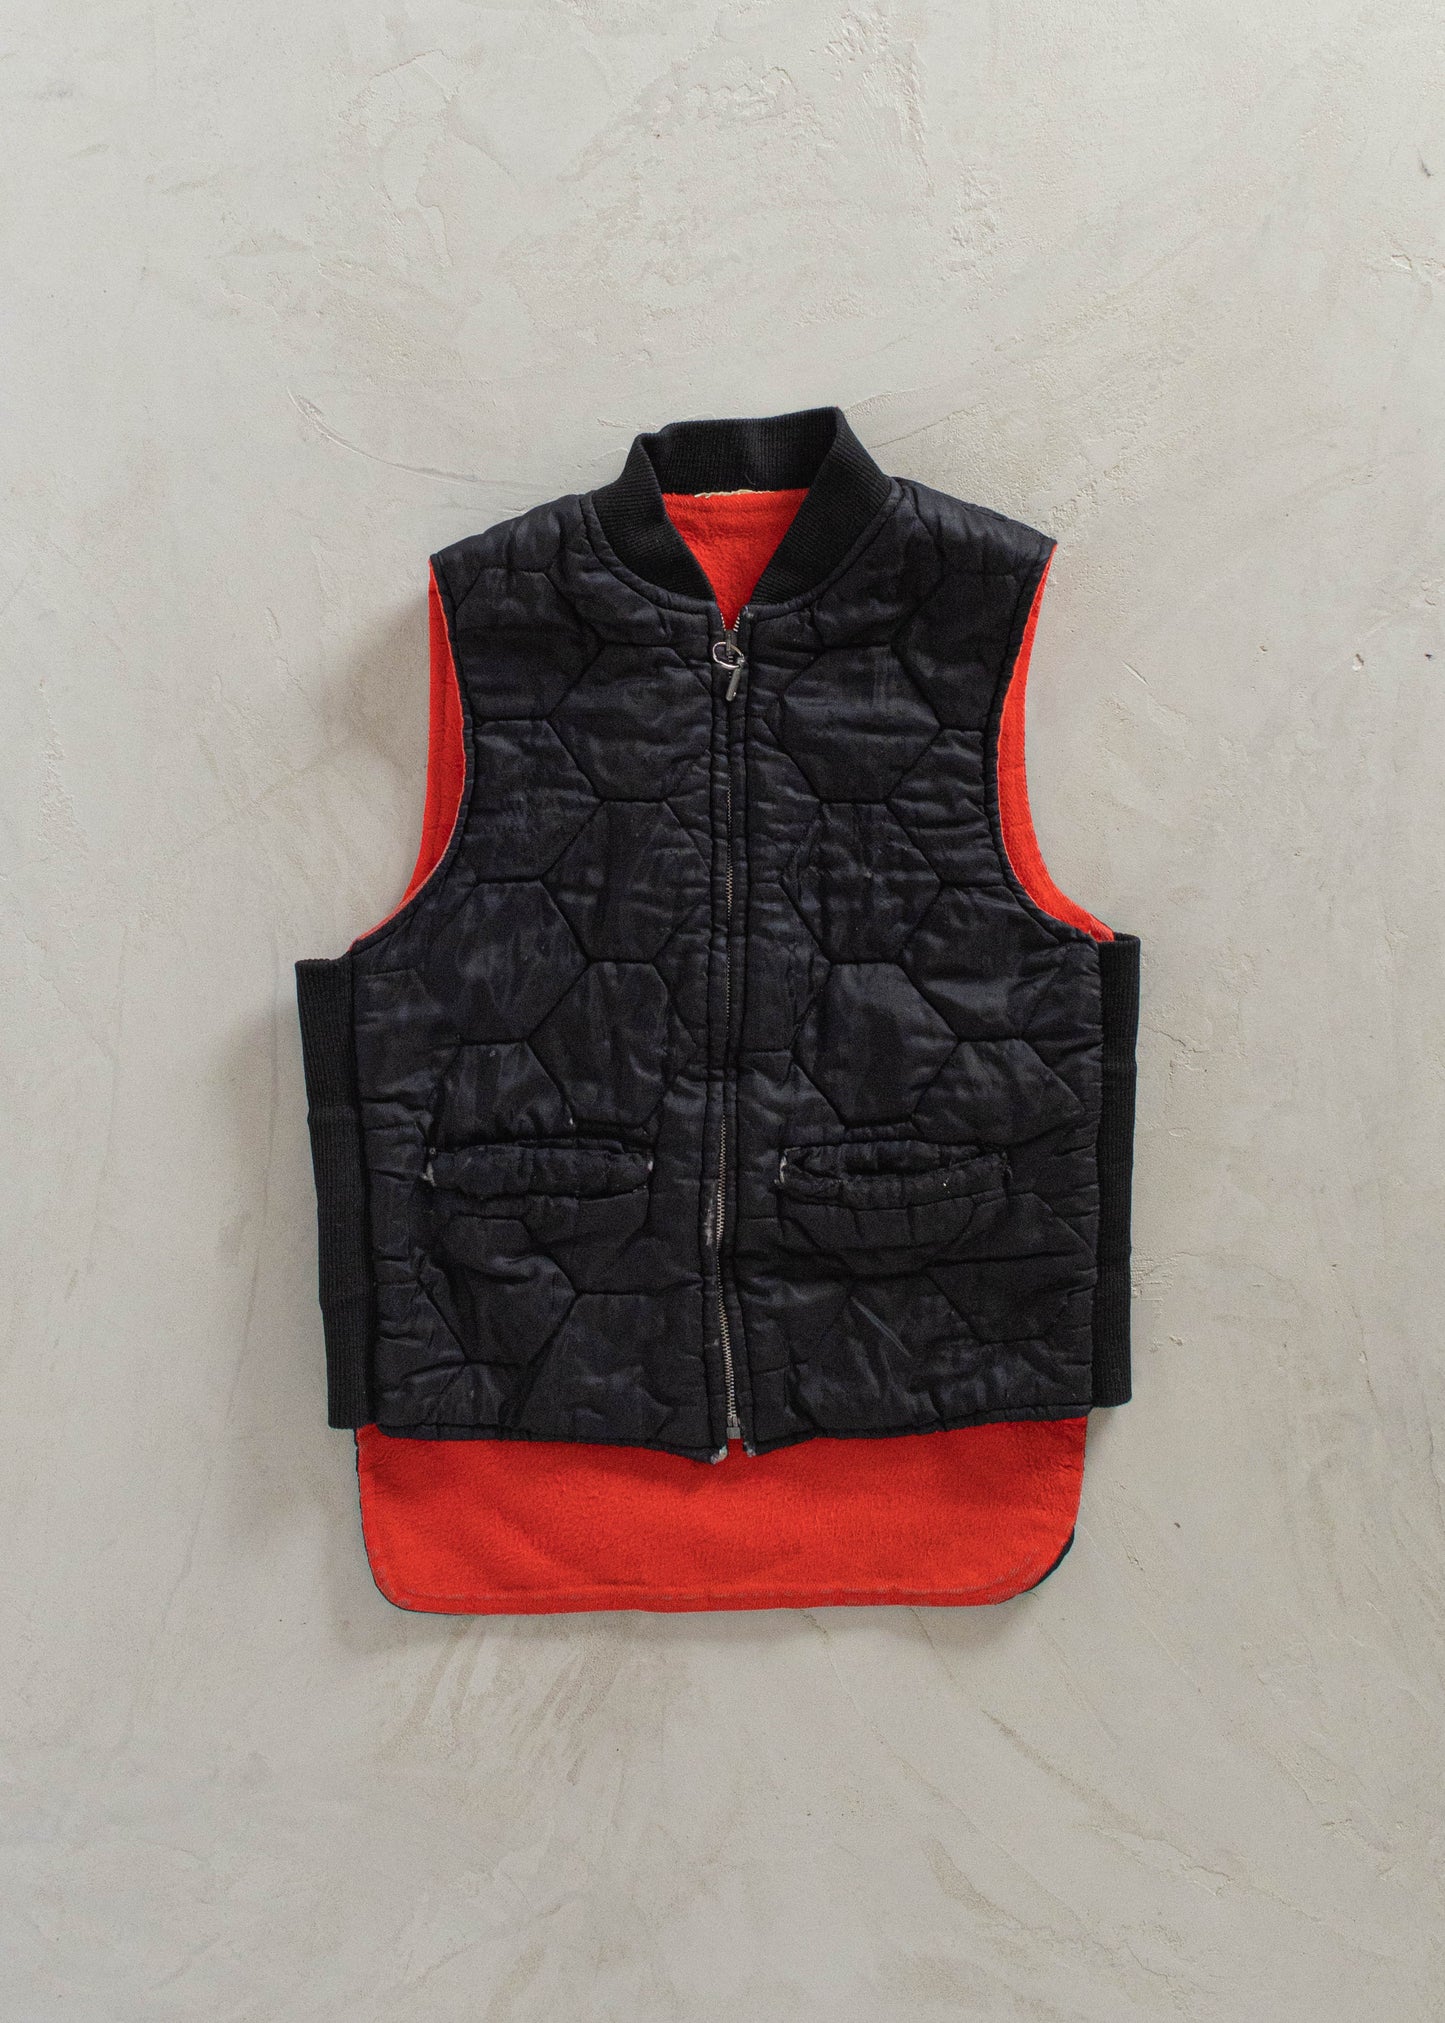 1980s Nylon Sherpa Lined Vest Size S/M